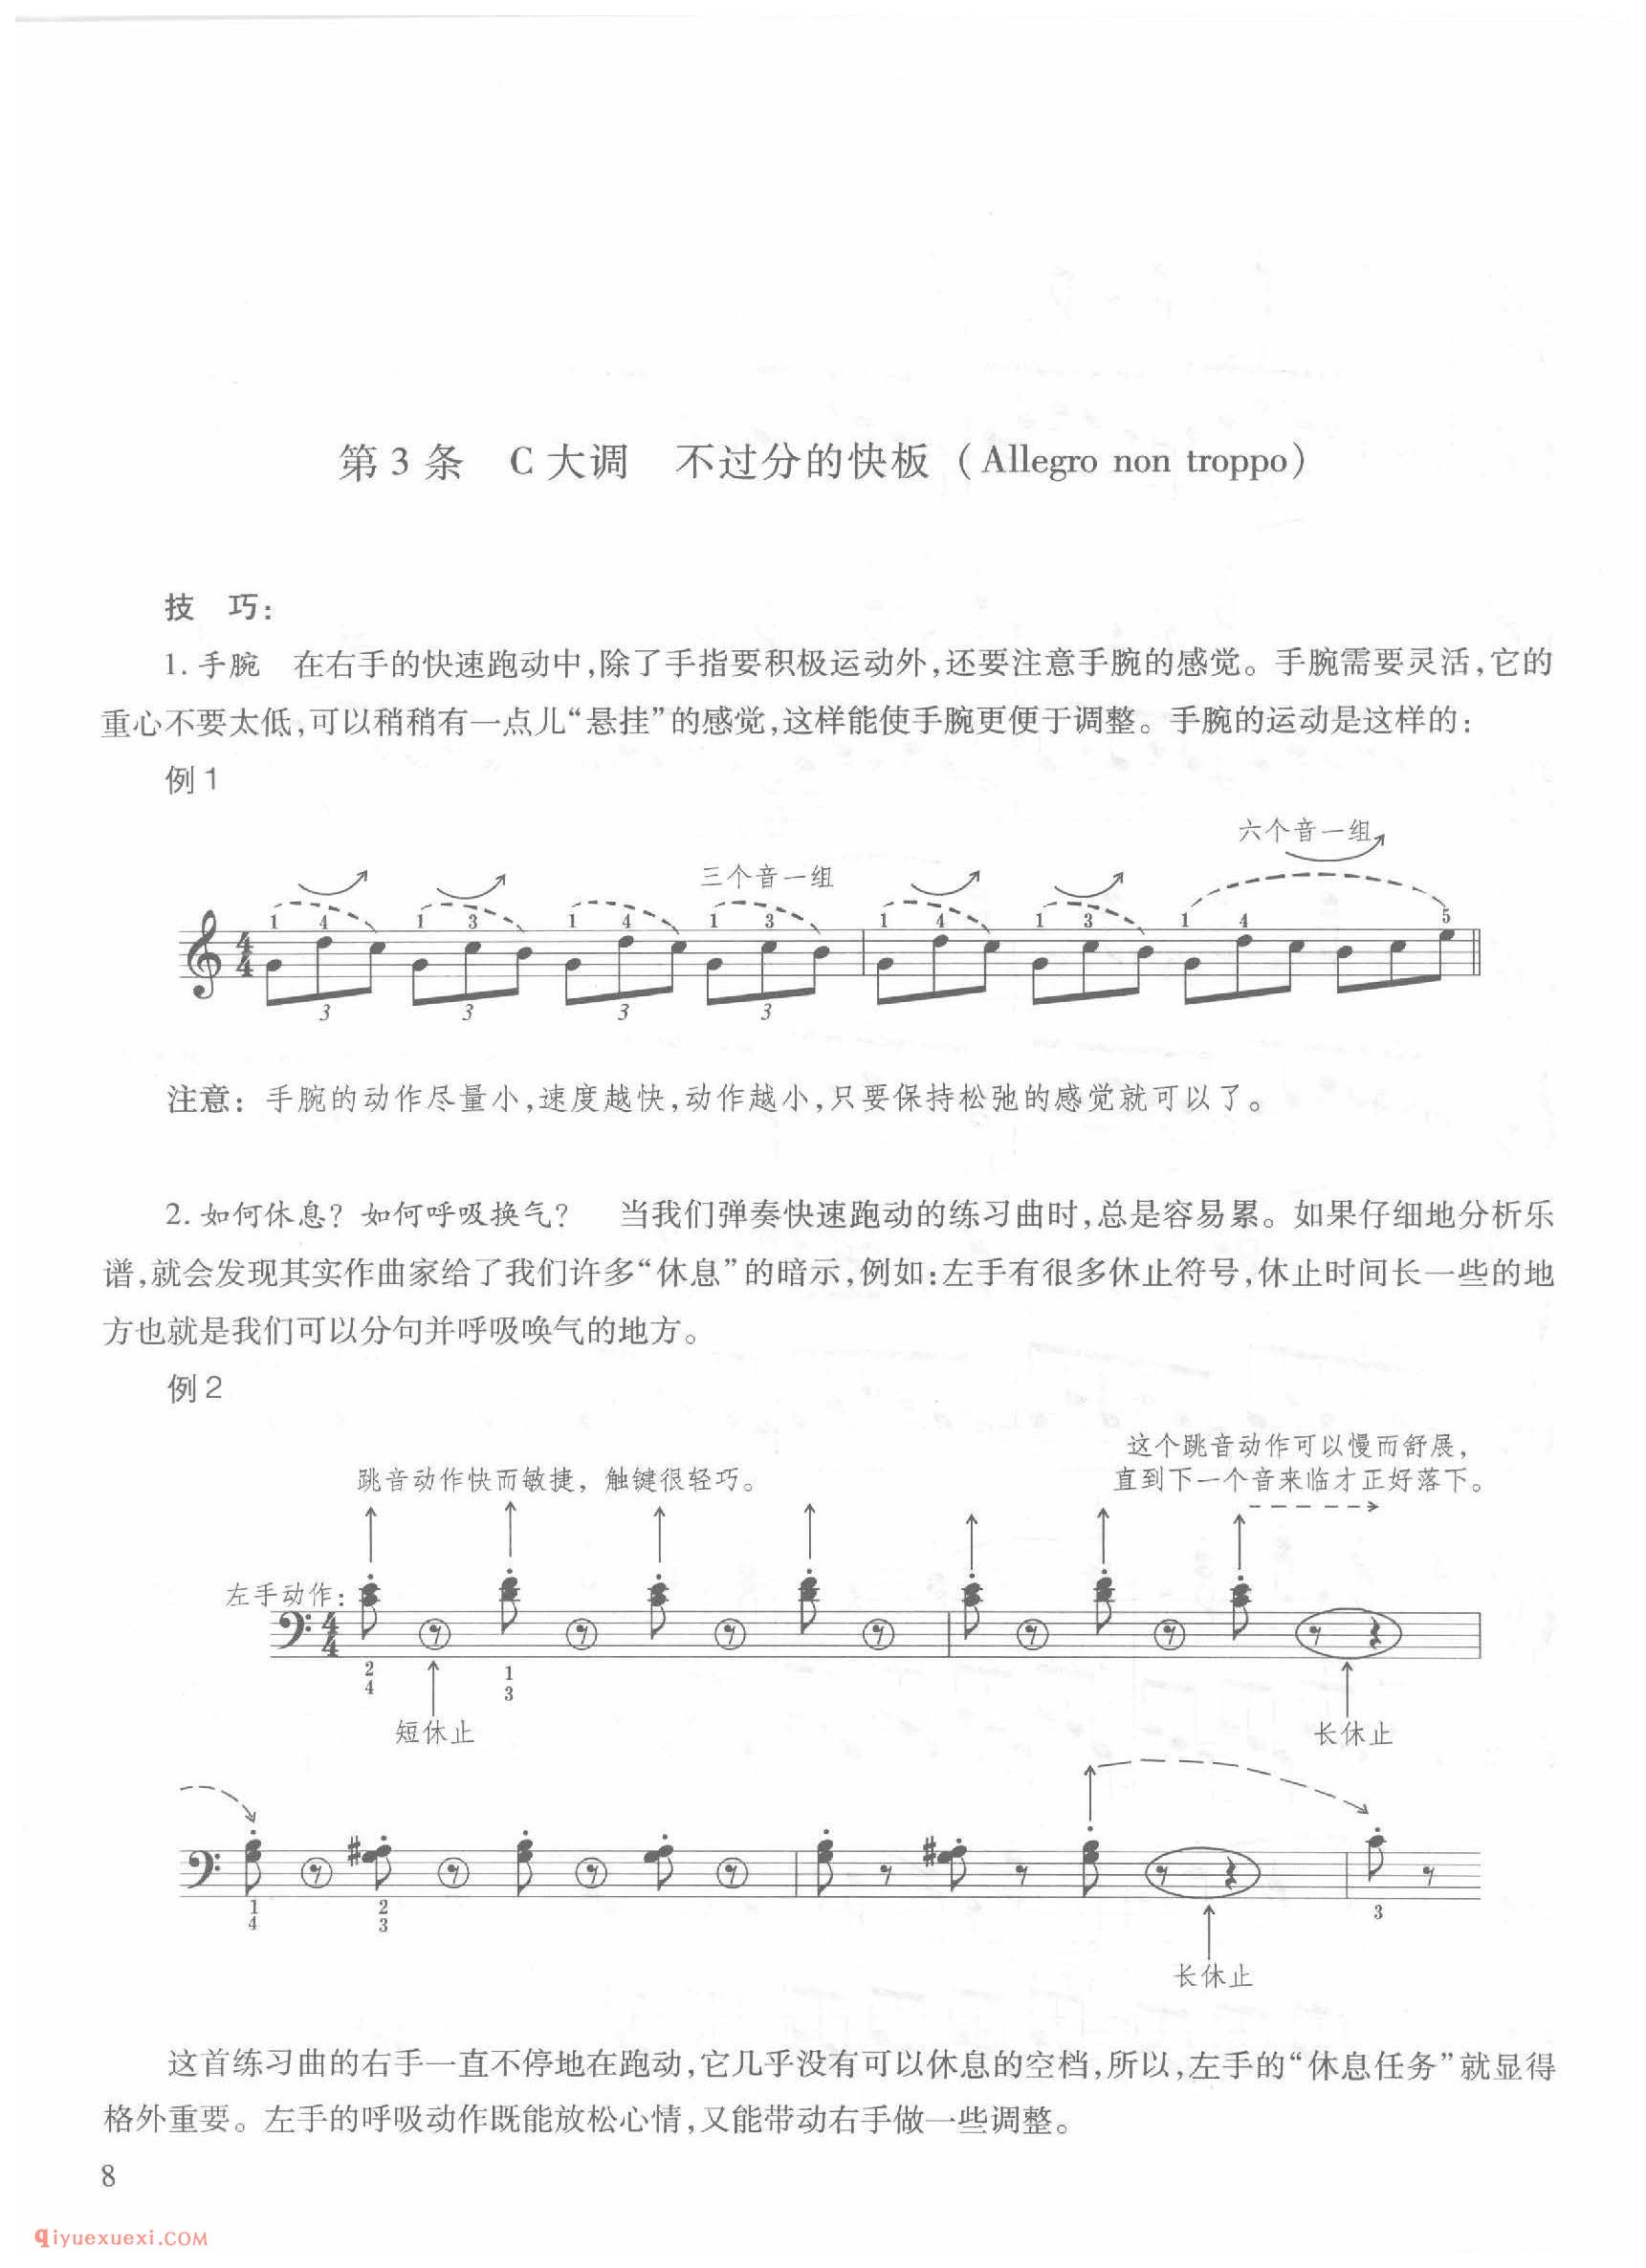 第3条 C大调不过分的快板（Allegro non troppo）车尔尼钢琴作品849_常桦讲解 注释